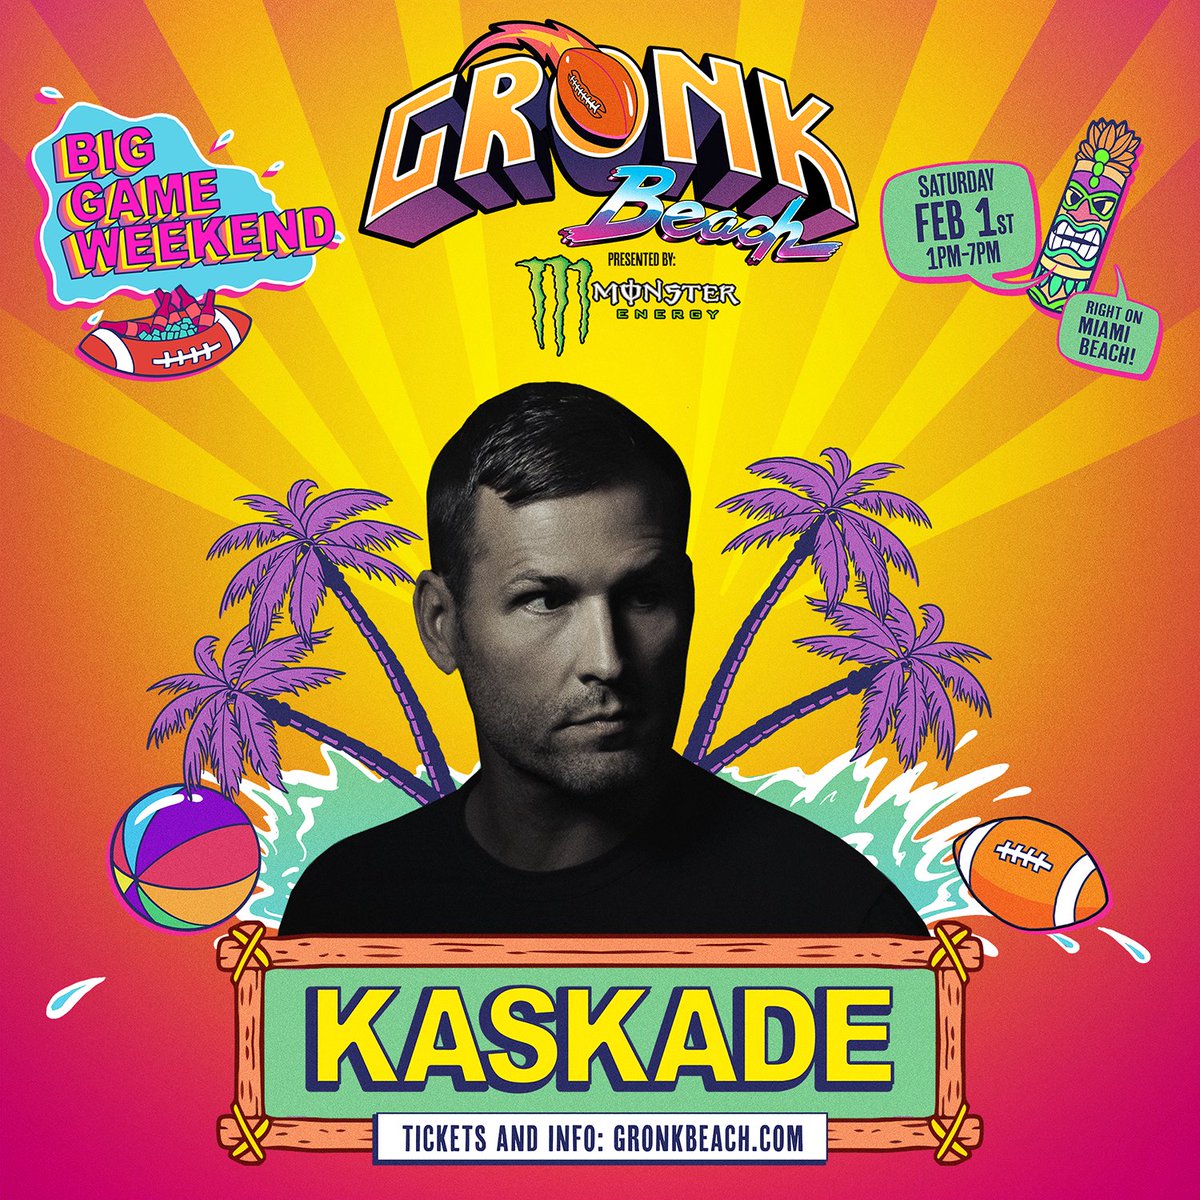 The Gronk Beach Party Miami 2020